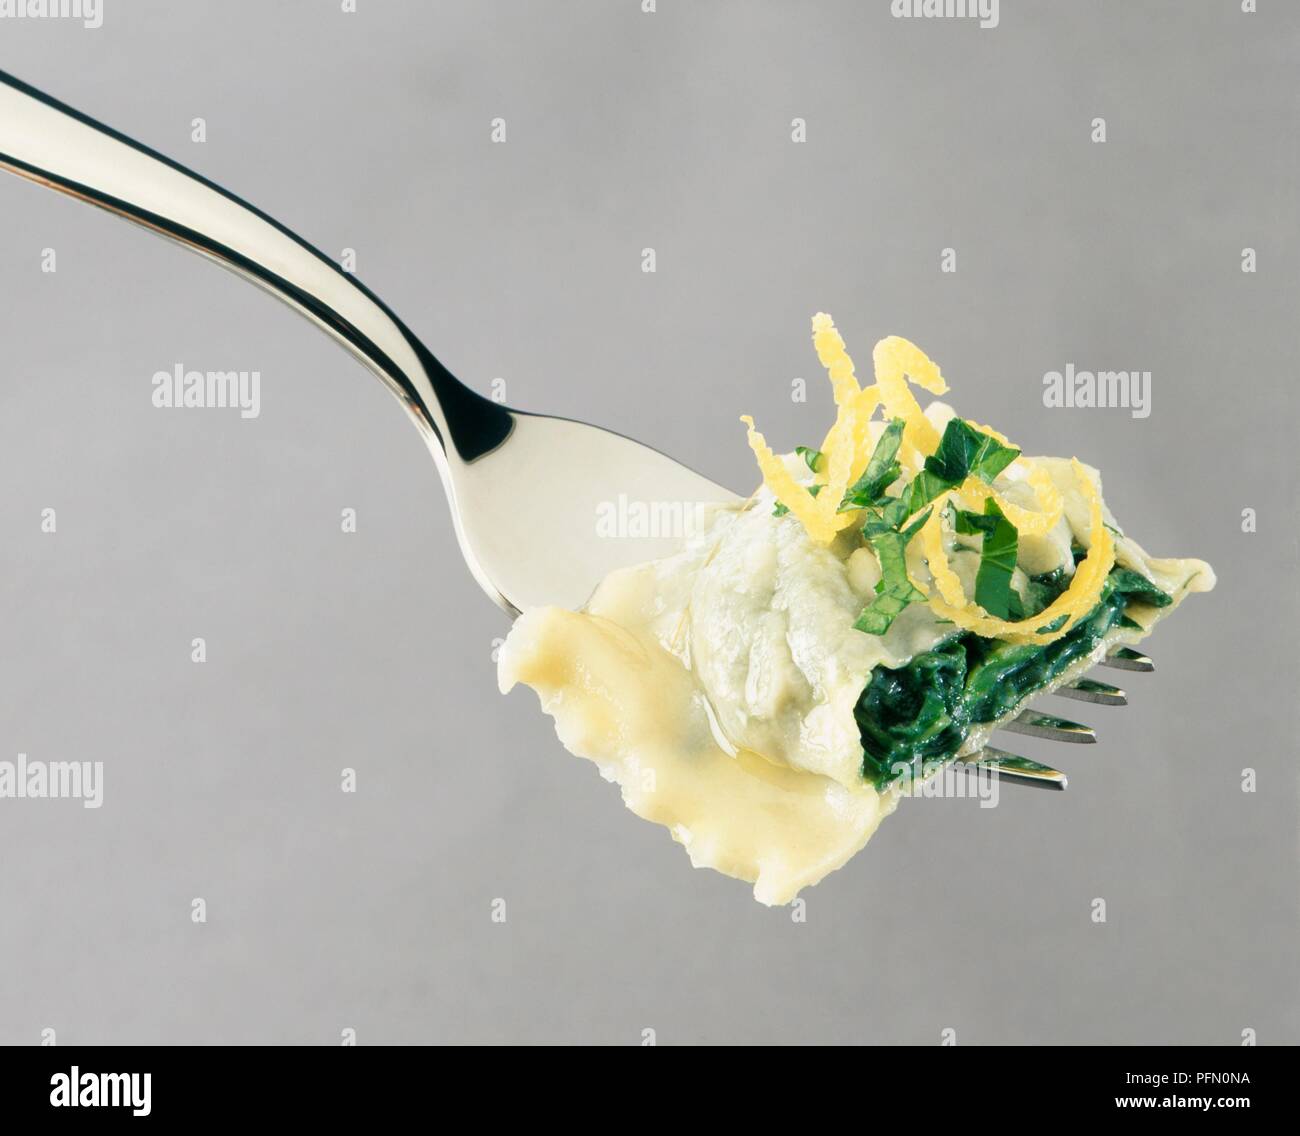 Spinat und Kreuzkümmel Ravioli mit Zitrone Butter auf Gabel Stockfoto